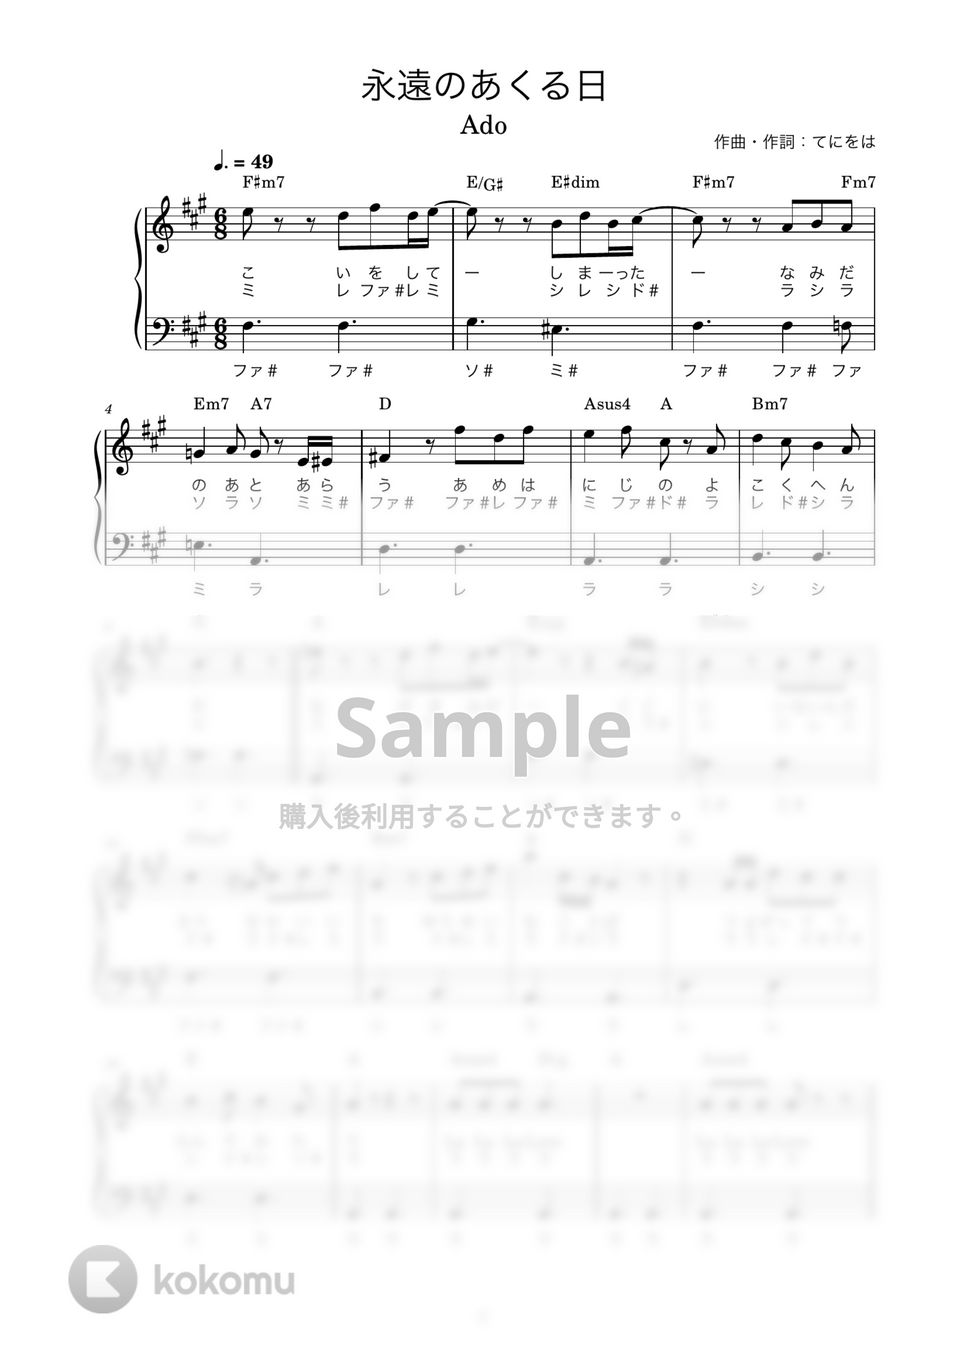 Ado - 永遠のあくる日 (かんたん / 歌詞付き / ドレミ付き / 初心者) by piano.tokyo